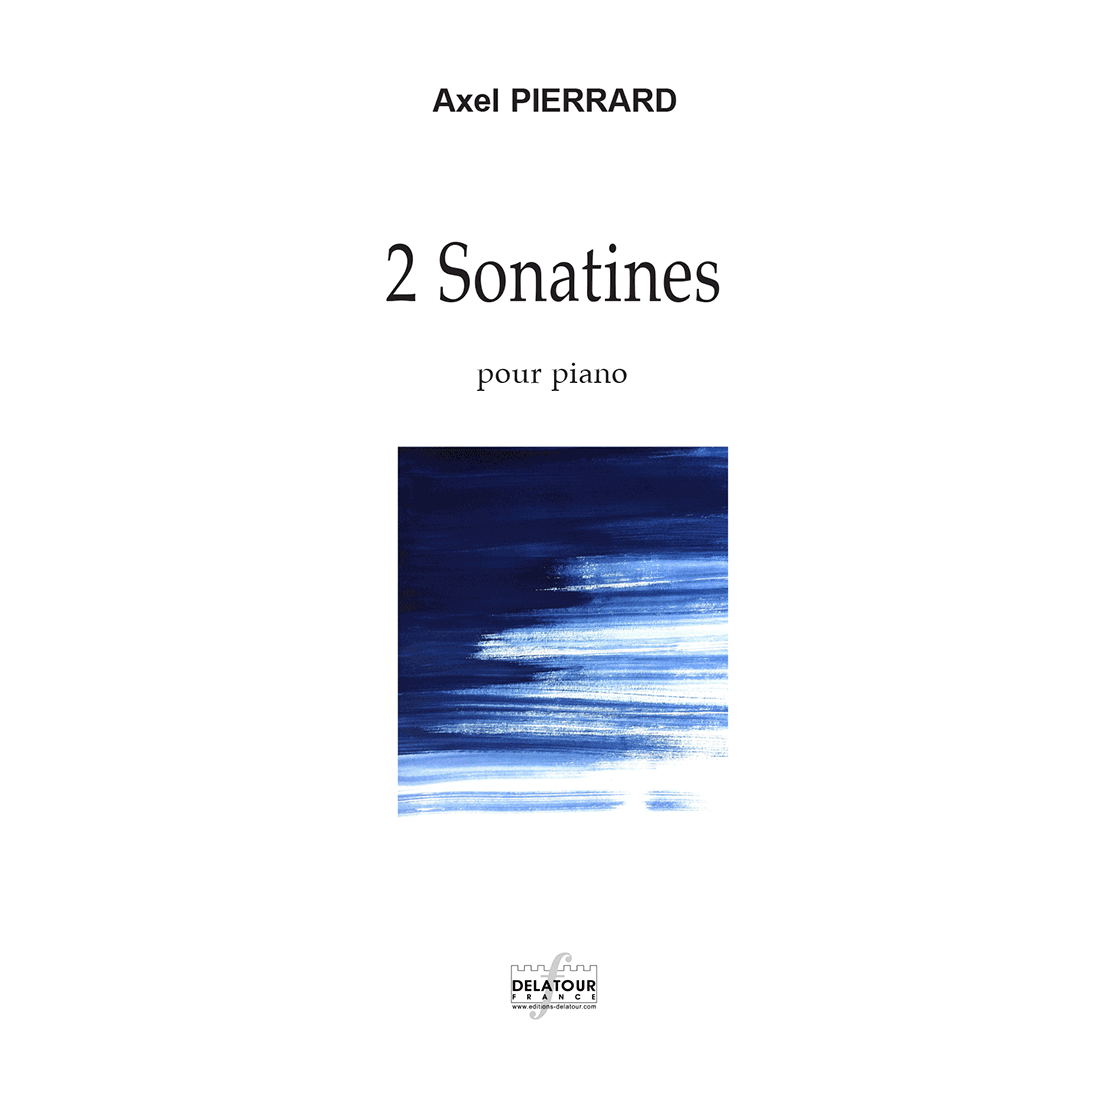 2 sonatines pour piano